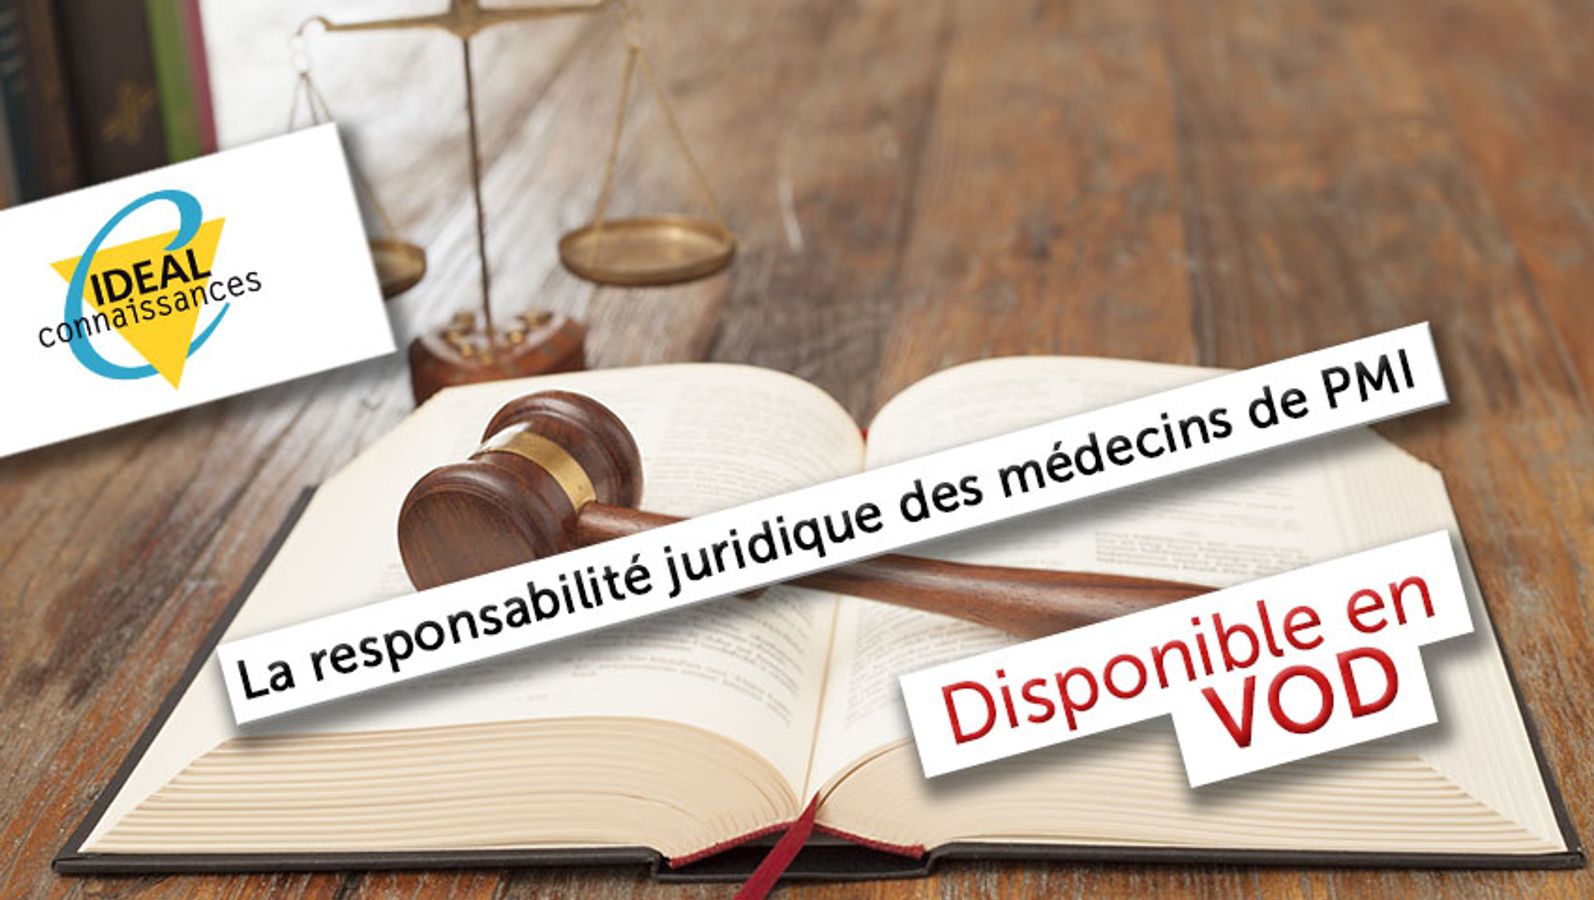 La responsabilité juridique des médecins de PMI